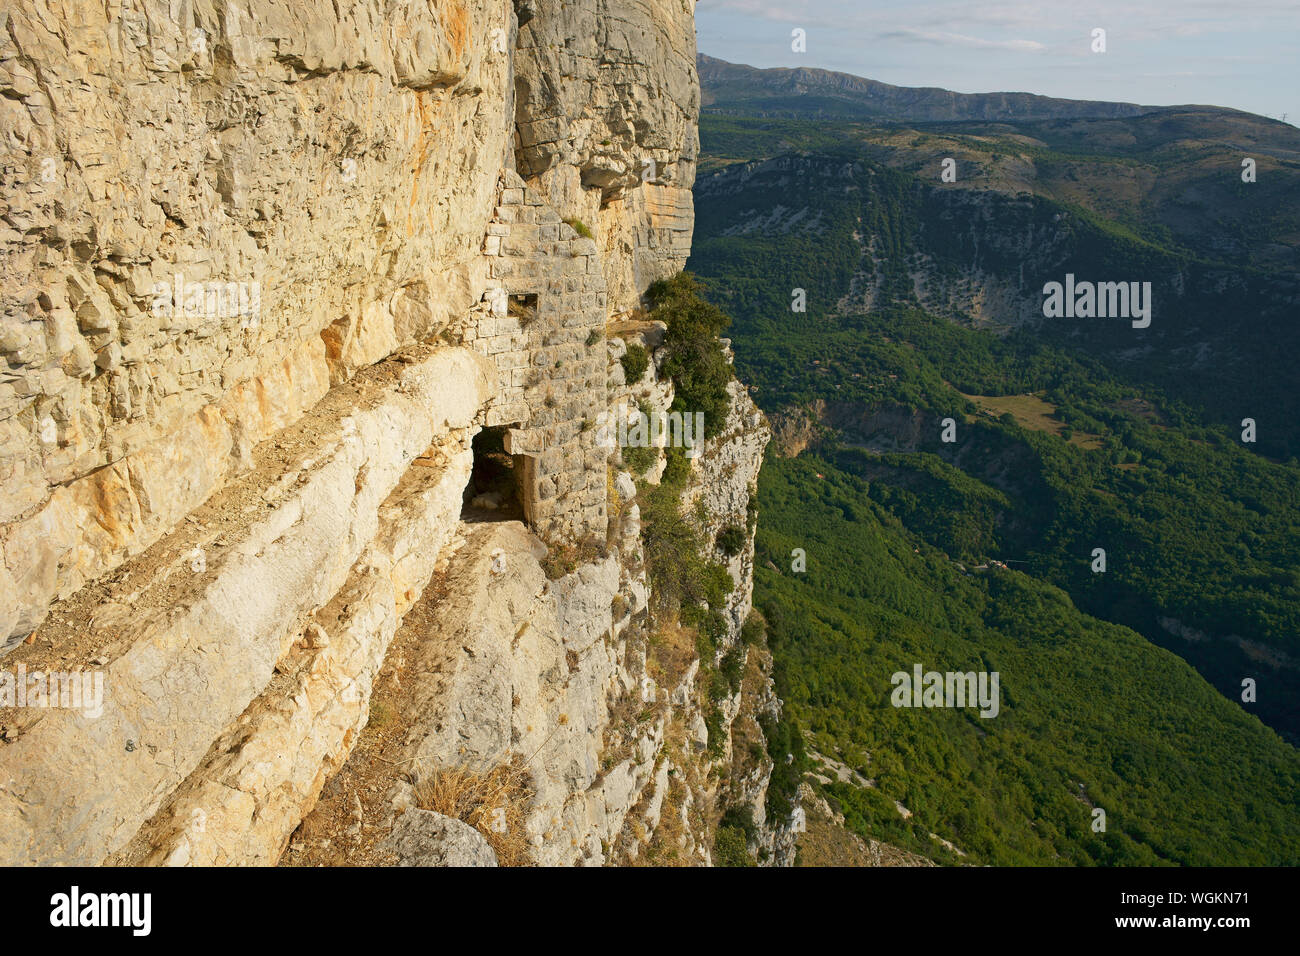 VISTA AEREA da un montante di 6 metri. Stretta sporgenza vertiginosa su una massiccia scogliera che conduce ad una fortezza inespugnabile. Gourdon, Costa Azzurra, Francia. Foto Stock